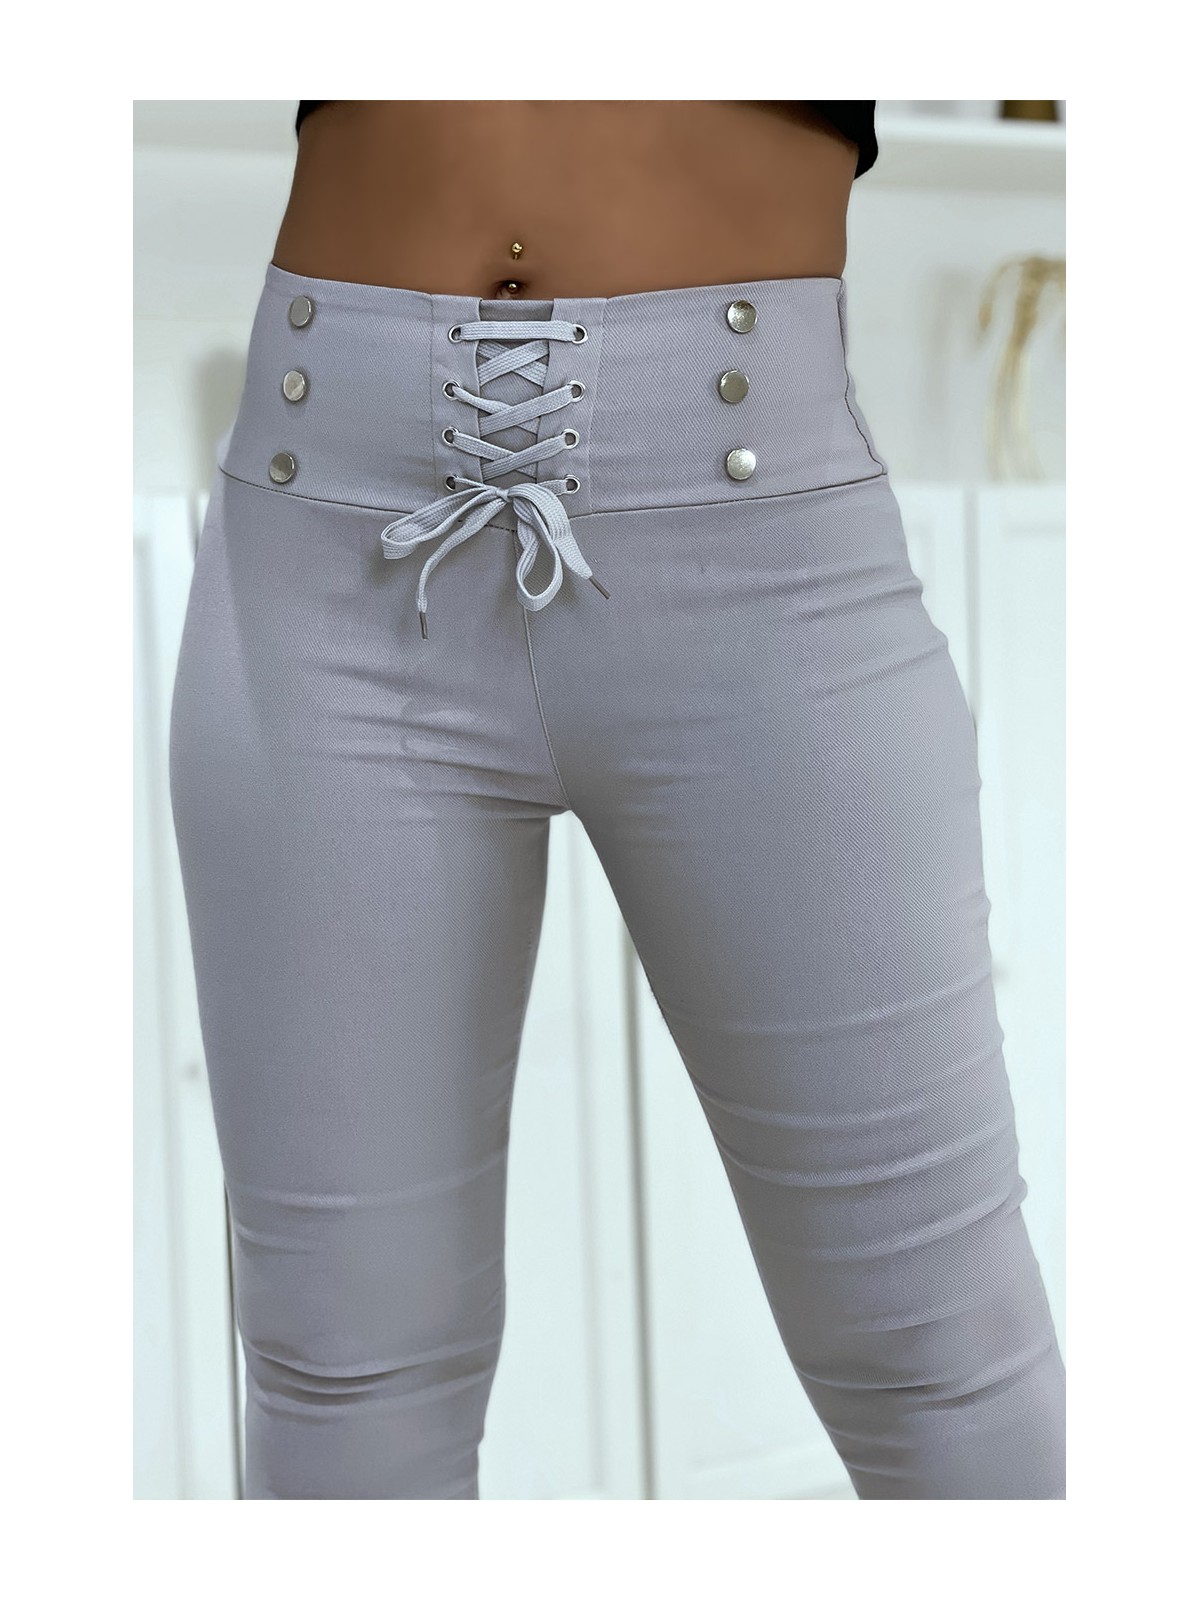 Pantalon strech gris avec lacet et boutons - 7